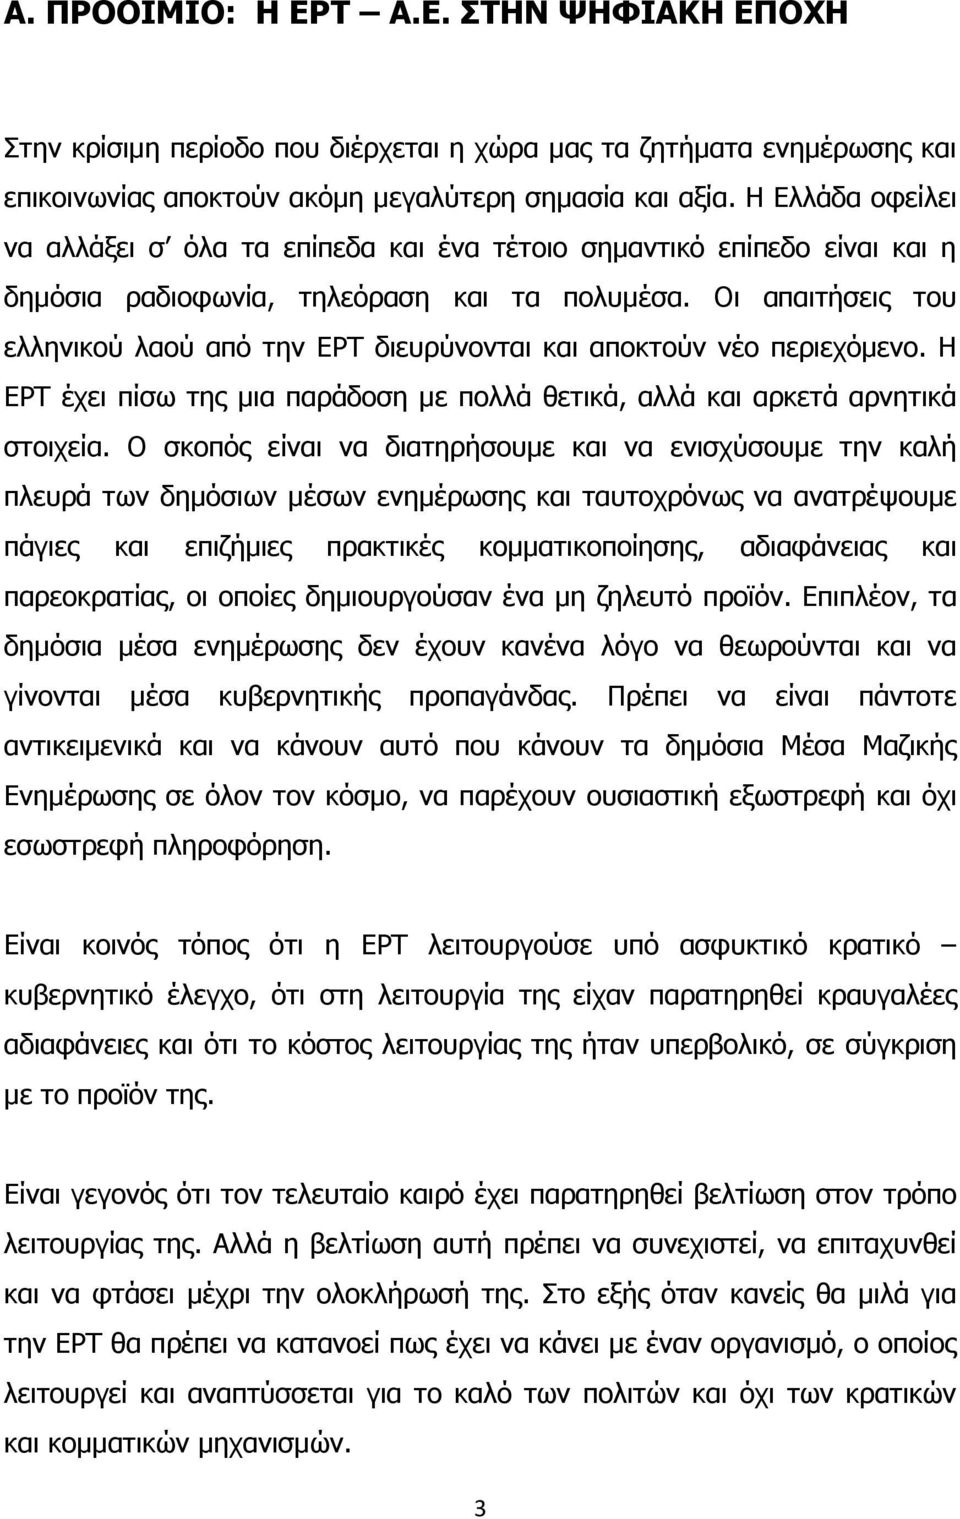 Οι απαιτήσεις του ελληνικού λαού από την ΕΡΤ διευρύνονται και αποκτούν νέο περιεχόµενο. Η ΕΡΤ έχει πίσω της µια παράδοση µε πολλά θετικά, αλλά και αρκετά αρνητικά στοιχεία.